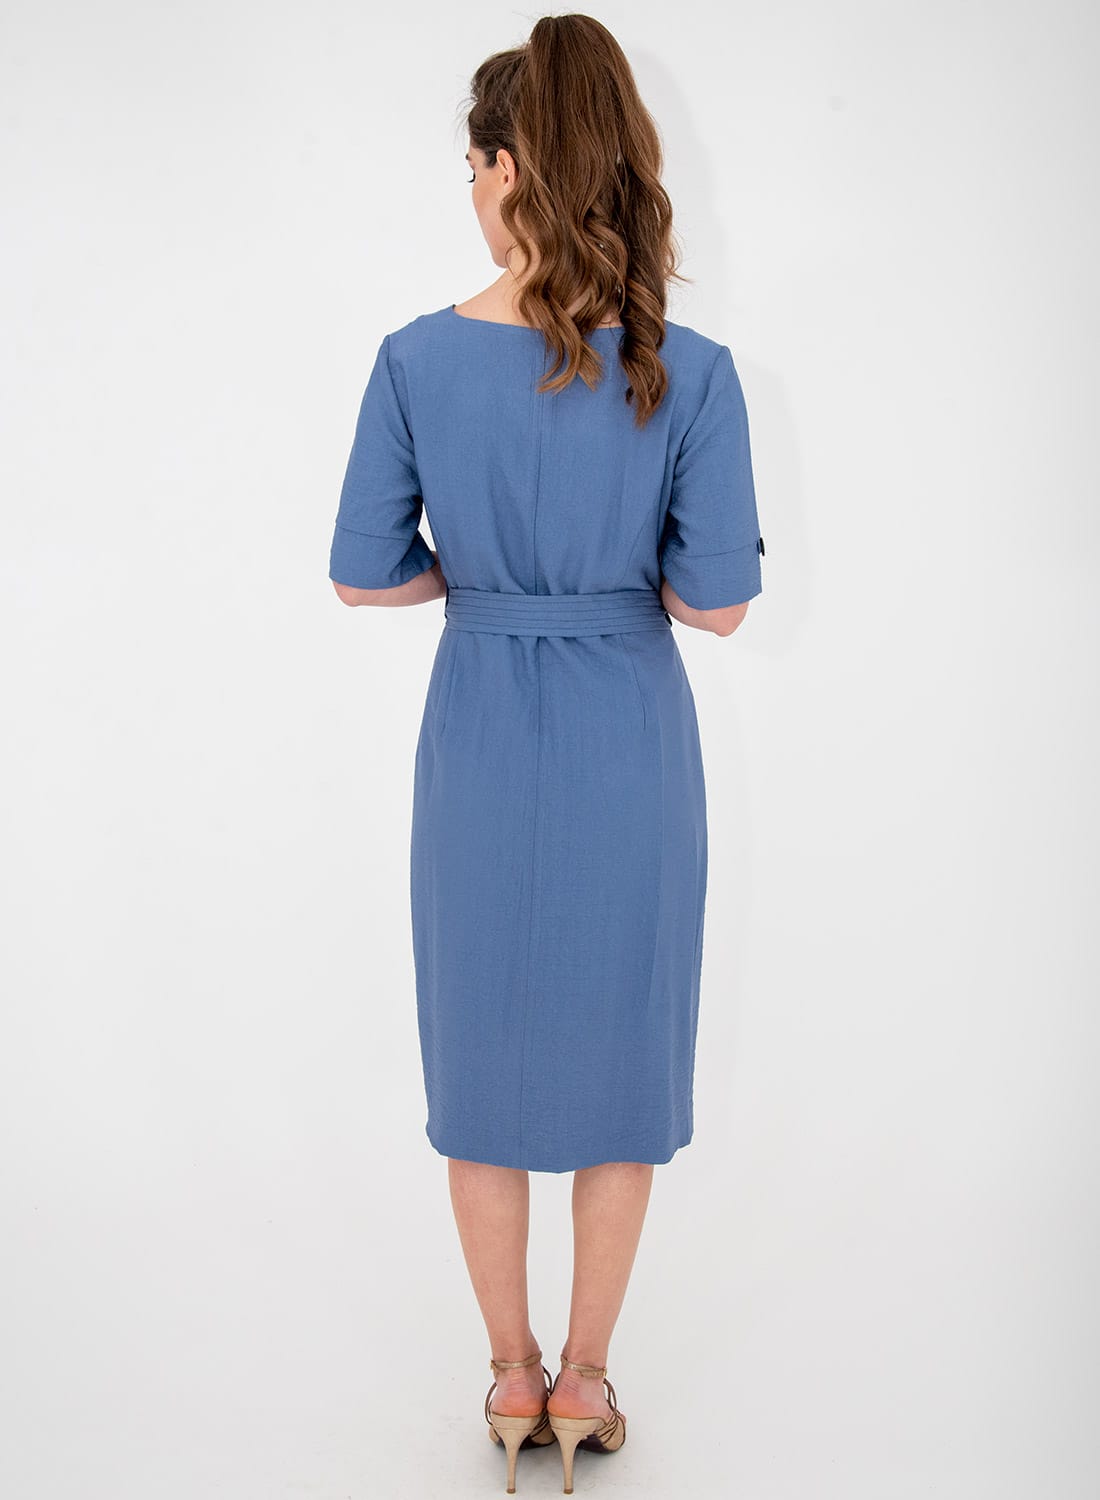 Μπλε ίσιο κολακευτικό φόρεμα με ζώνη